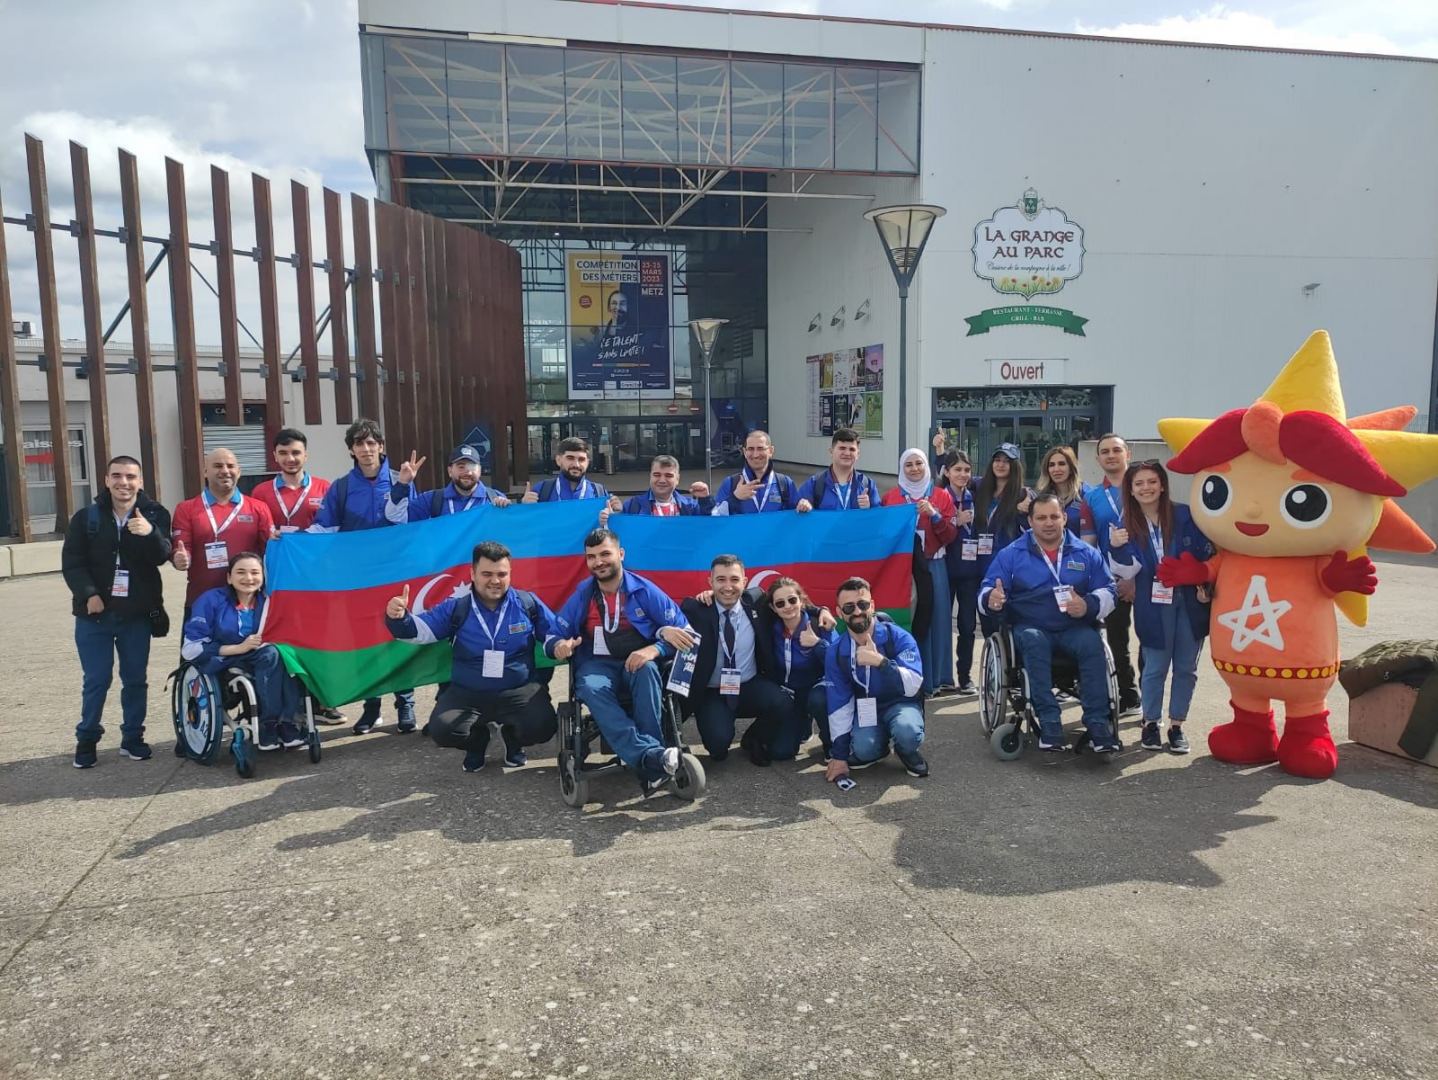 Представители Азербайджана впервые приняли участие в чемпионате абилимпийцев во Франции (ФОТО)